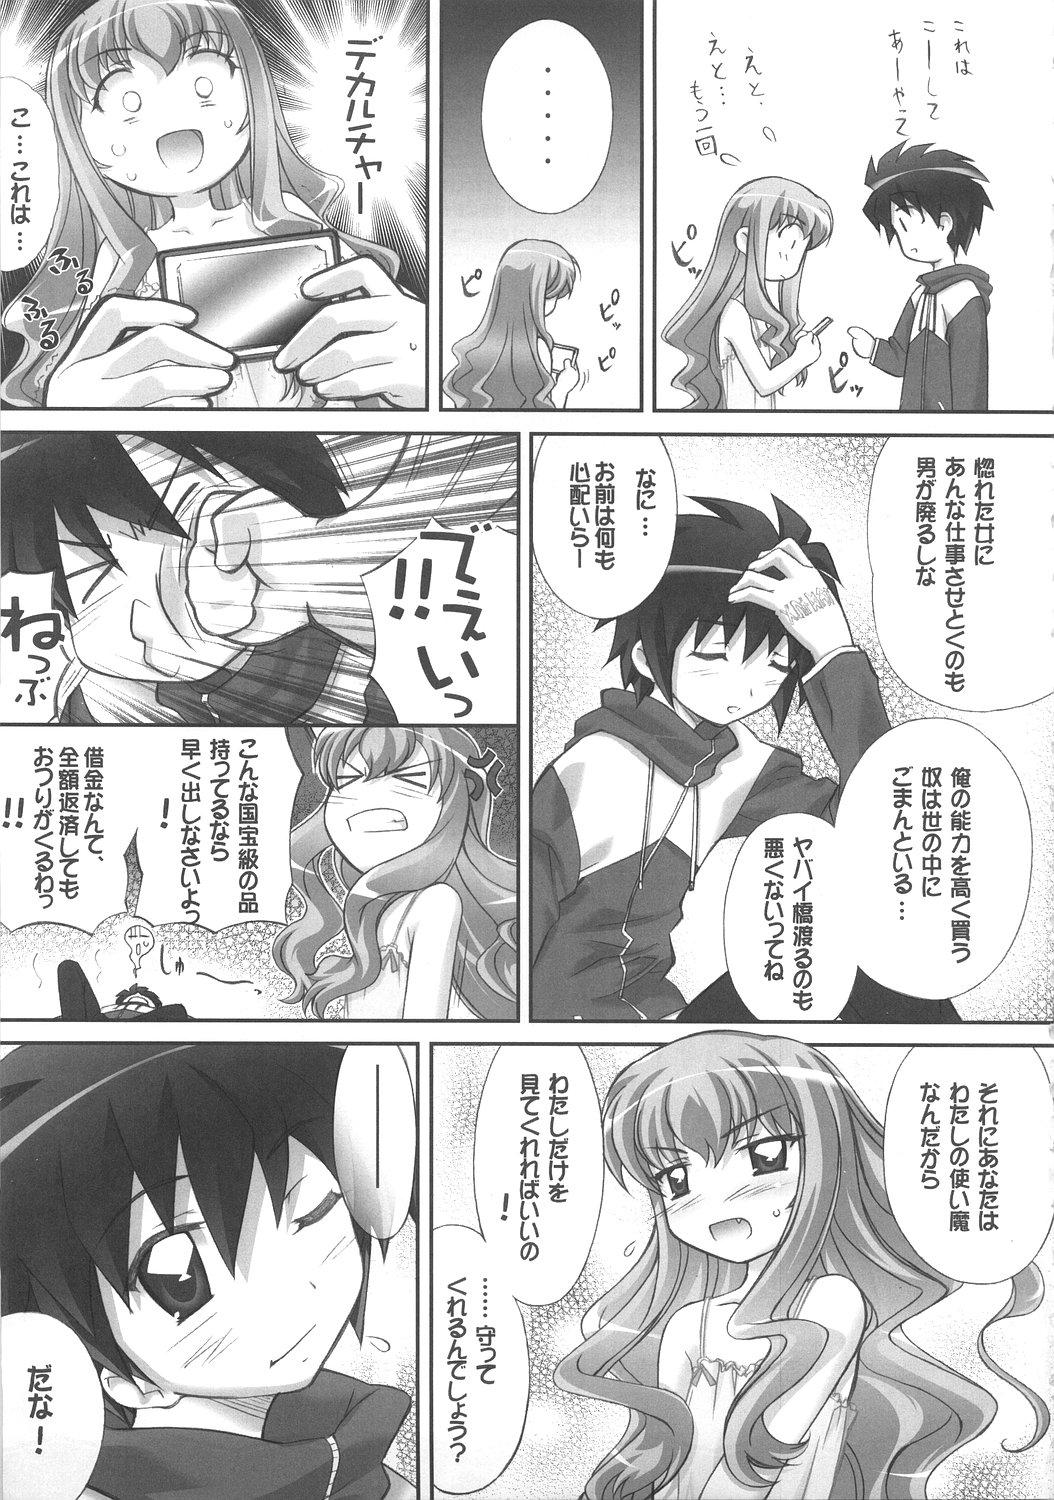 Smooth Louise no Gotoku! - Zero no tsukaima Amatuer - Page 32